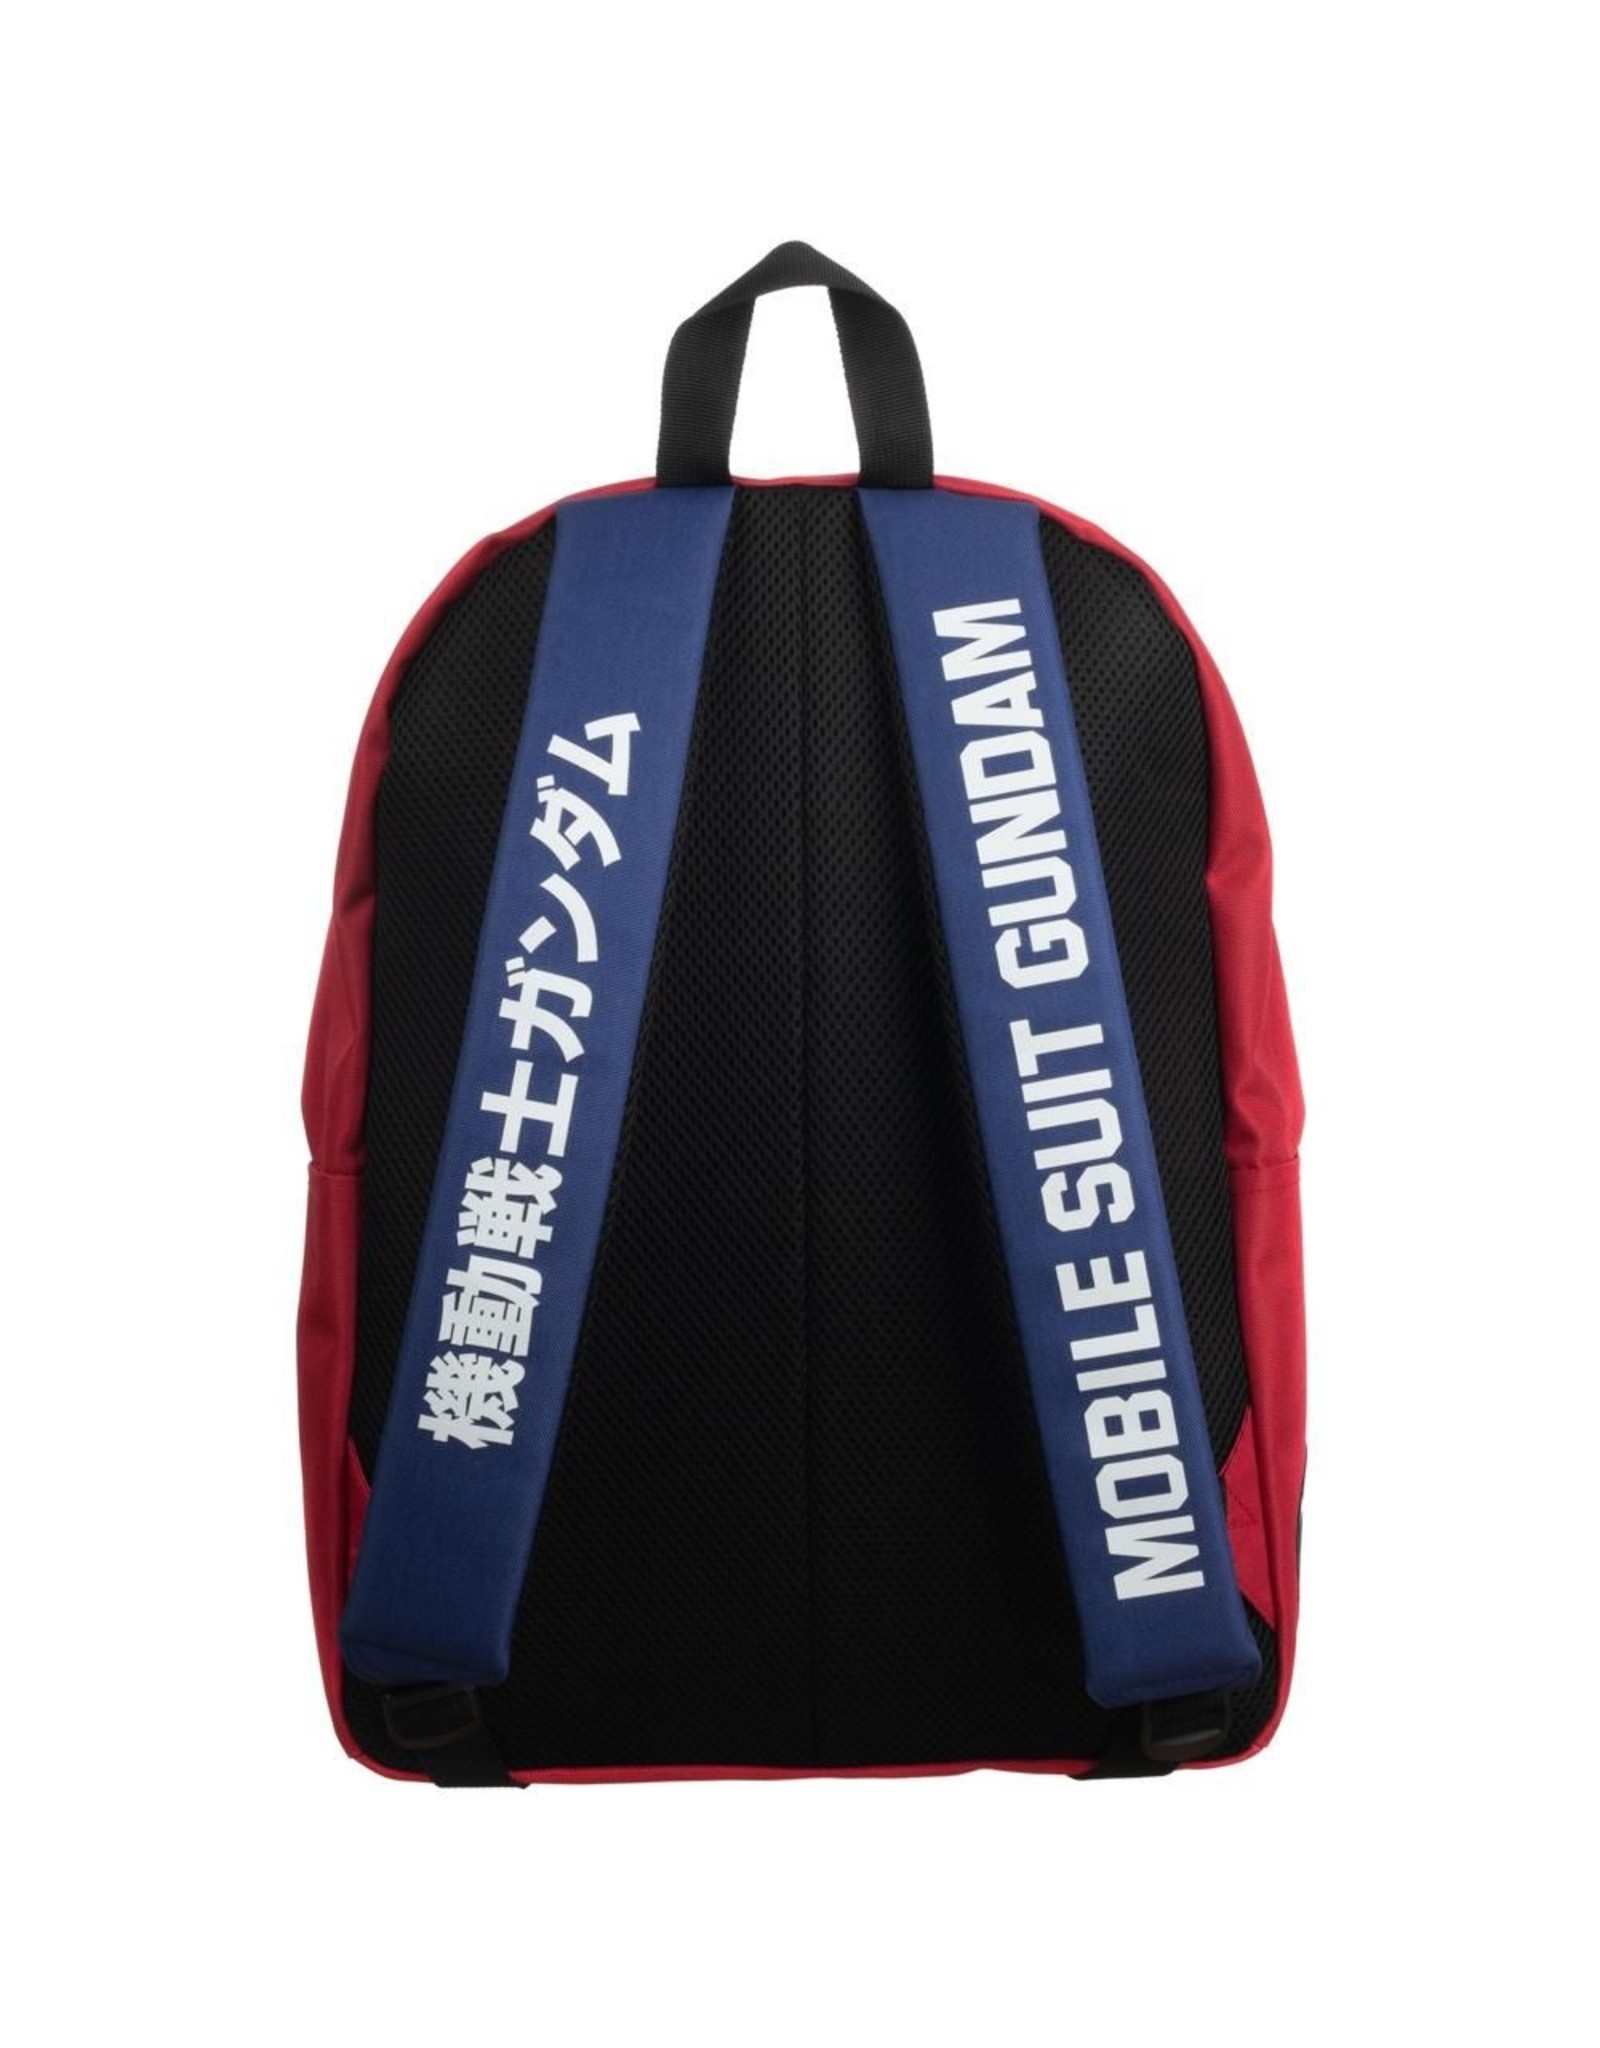 Gundam Merchandise - Gundam Retro Style Backpack